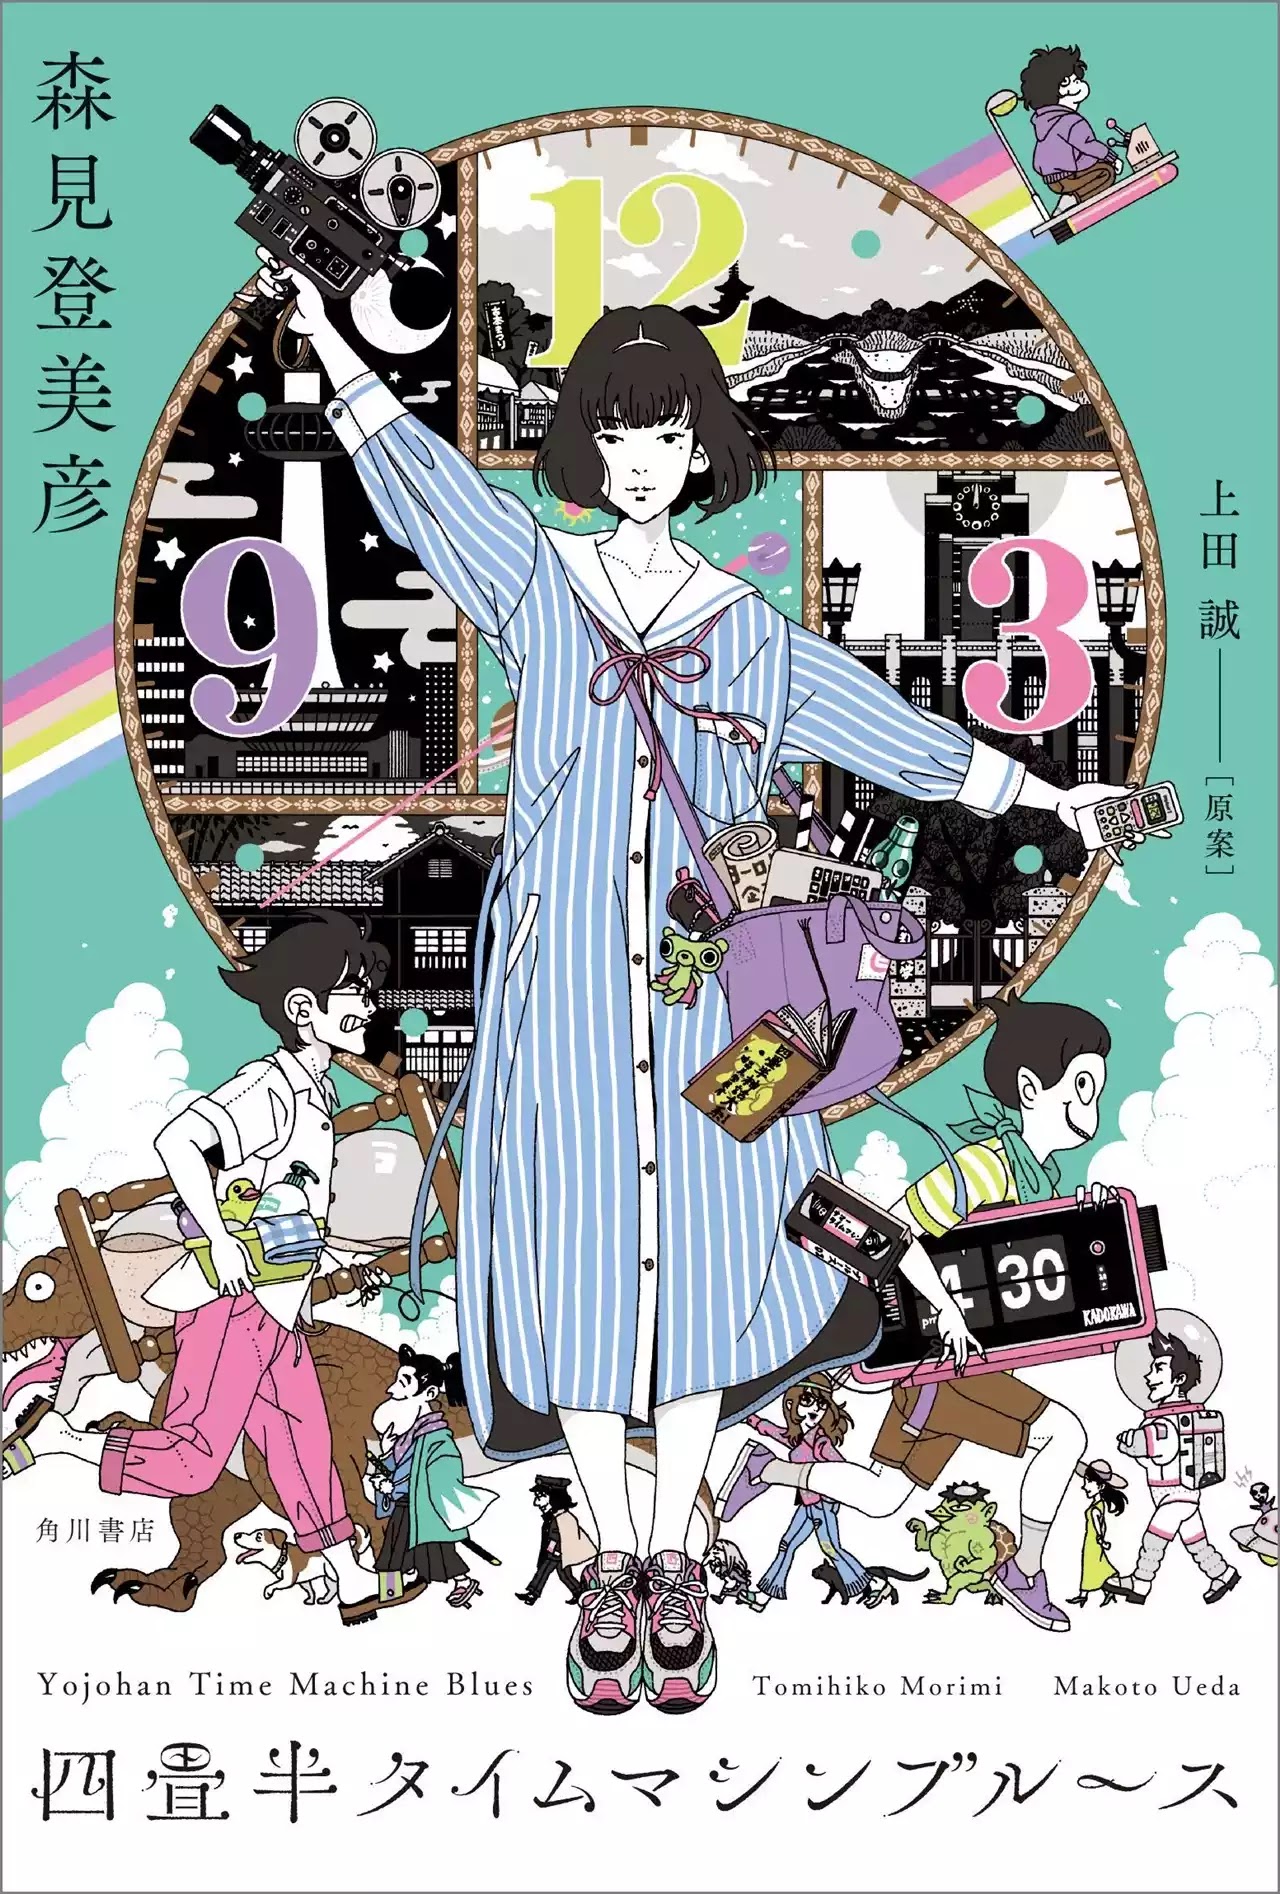 O Anime Yojouhan Time Machine Blues Divulgou um Novo Trailer